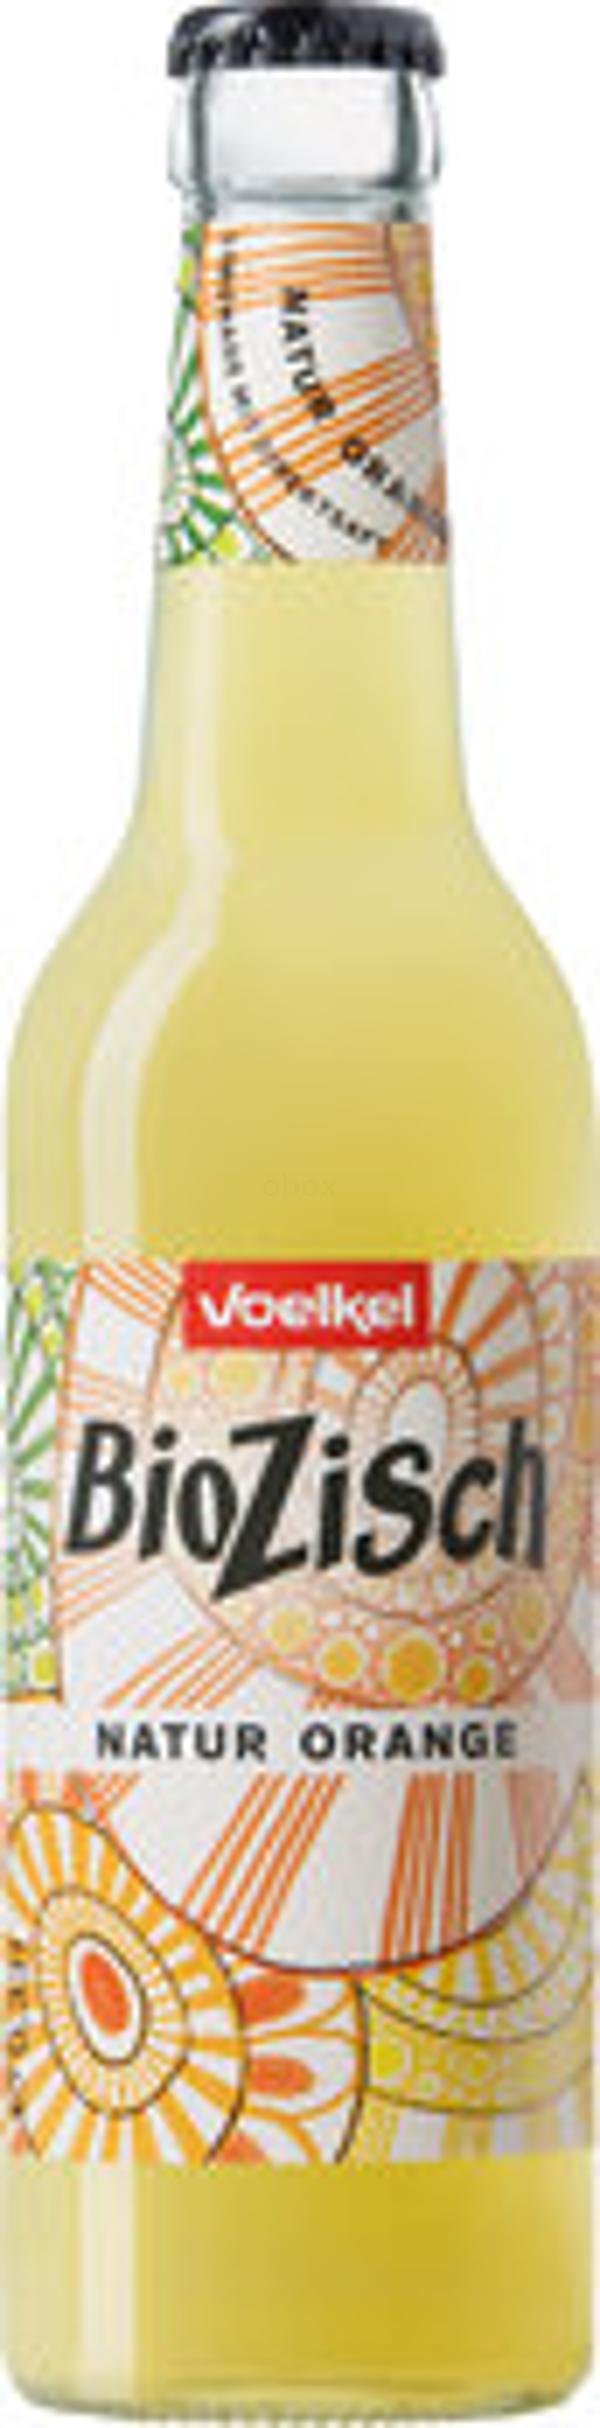 Produktfoto zu BioZisch Natur-Orange, 12x0,33 l